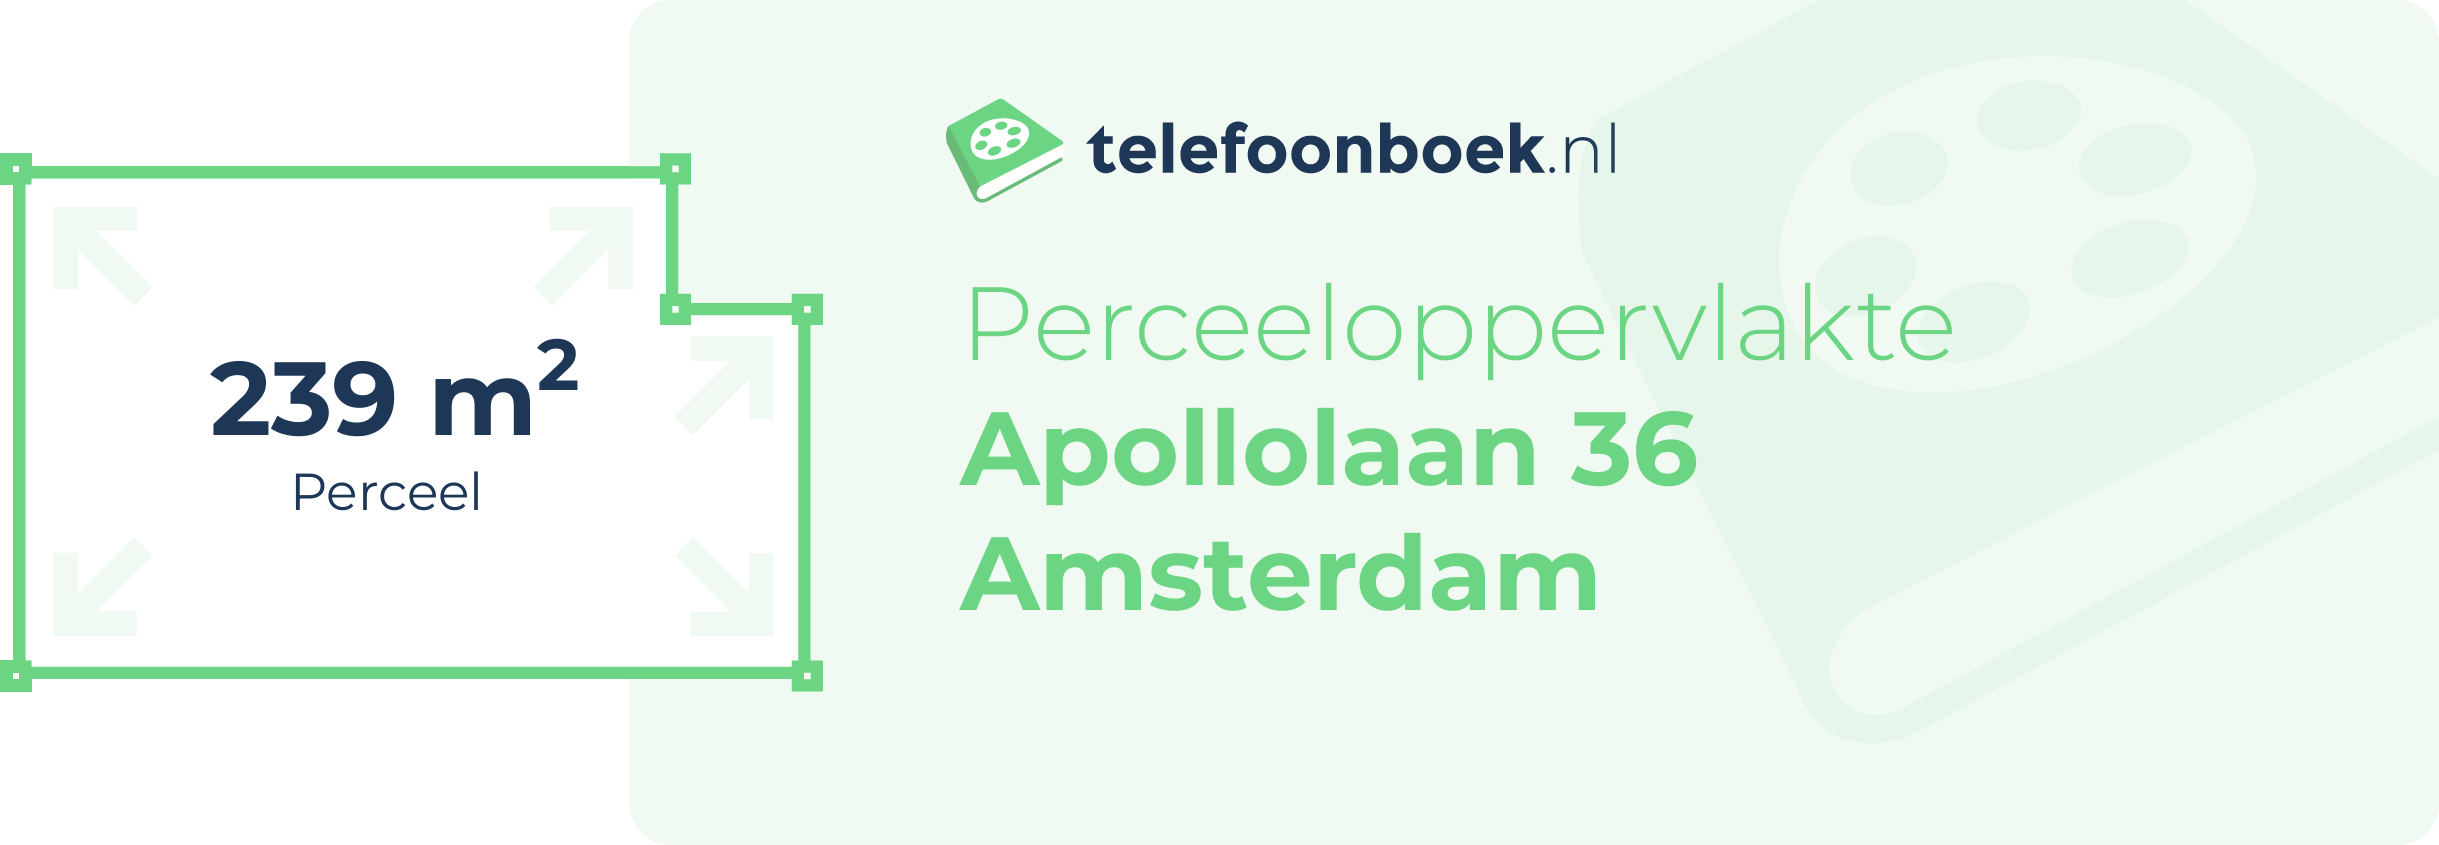 Perceeloppervlakte Apollolaan 36 Amsterdam